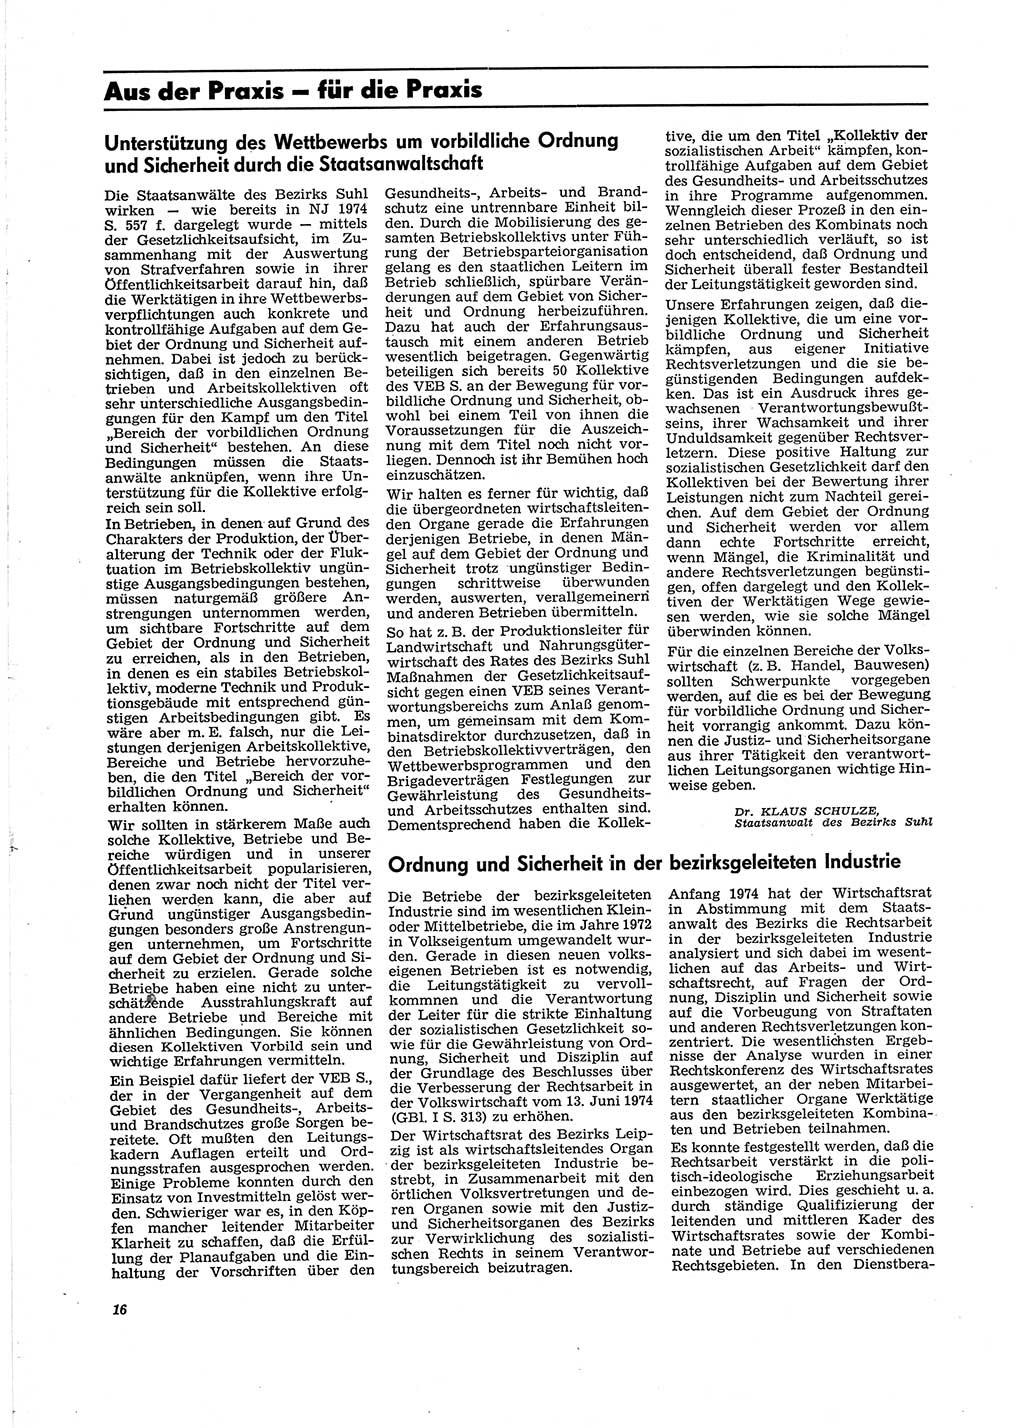 Neue Justiz (NJ), Zeitschrift für Recht und Rechtswissenschaft [Deutsche Demokratische Republik (DDR)], 29. Jahrgang 1975, Seite 16 (NJ DDR 1975, S. 16)